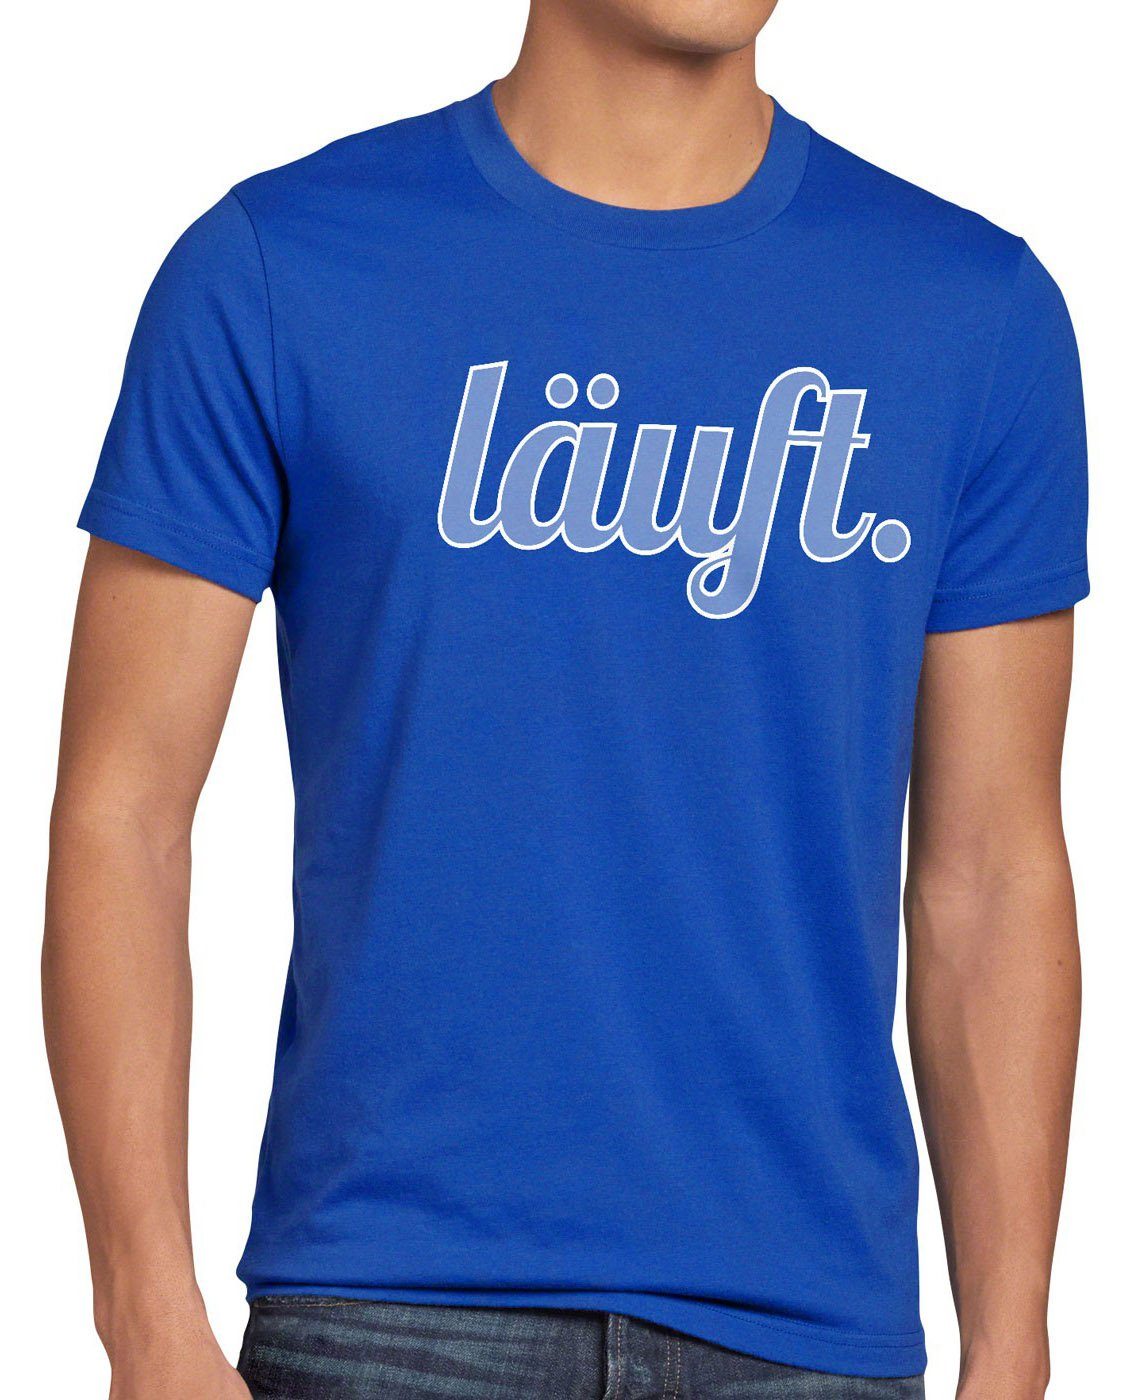 bei Shirt mir Herren Fun top meme T-Shirt Spruchshirt läuft Funshirt style3 Print-Shirt kult dir blau